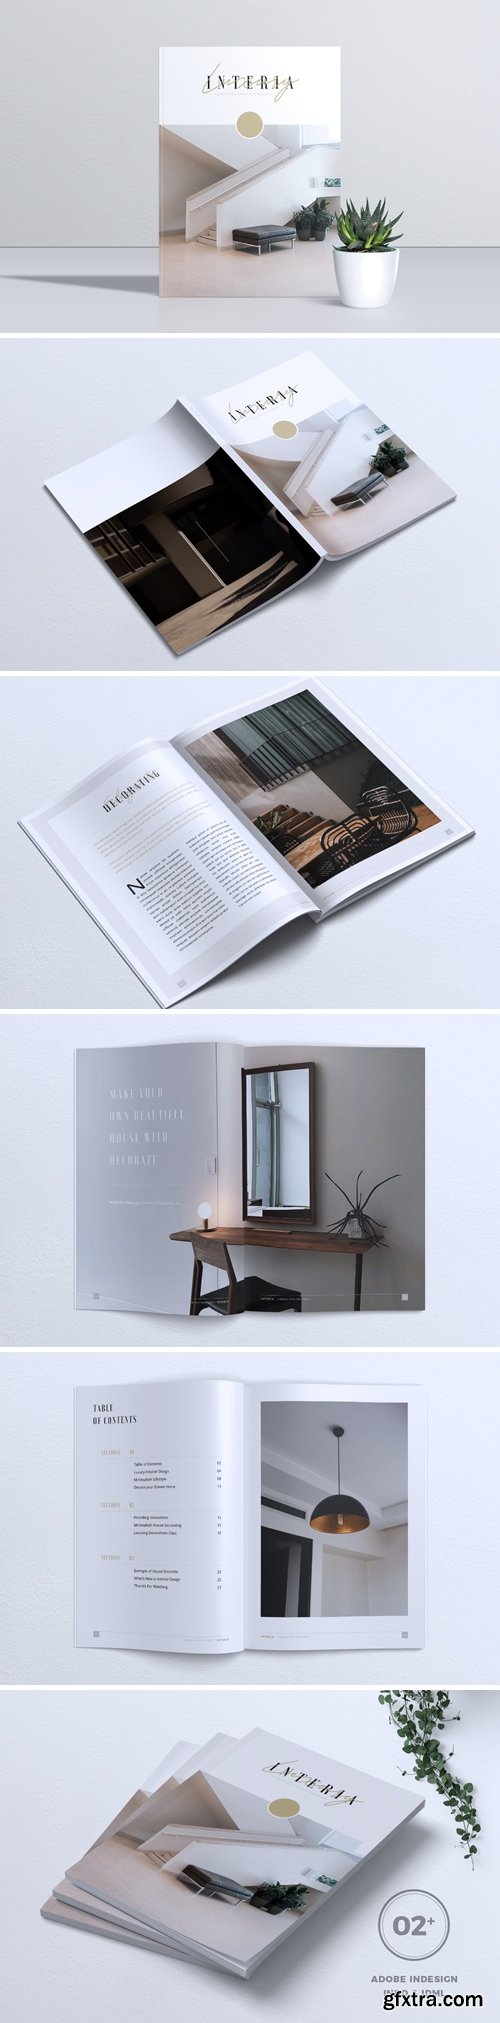 INTERIA Luxury Interior Magazine